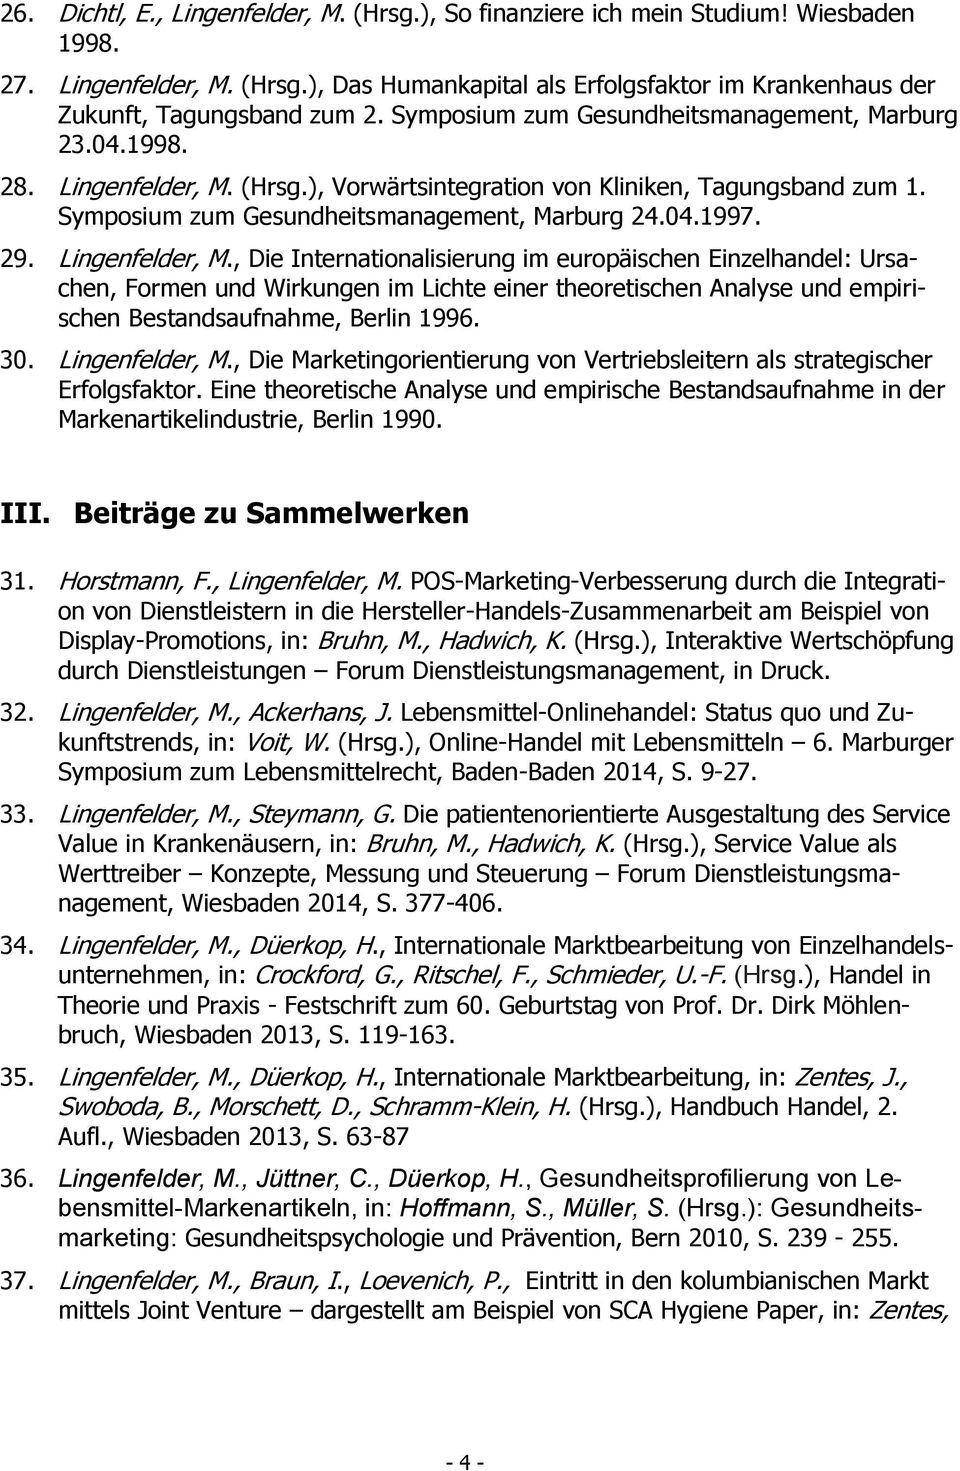 Lingenfelder, M., Die Internationalisierung im europäischen Einzelhandel: Ursachen, Formen und Wirkungen im Lichte einer theoretischen Analyse und empirischen Bestandsaufnahme, Berlin 1996. 30.